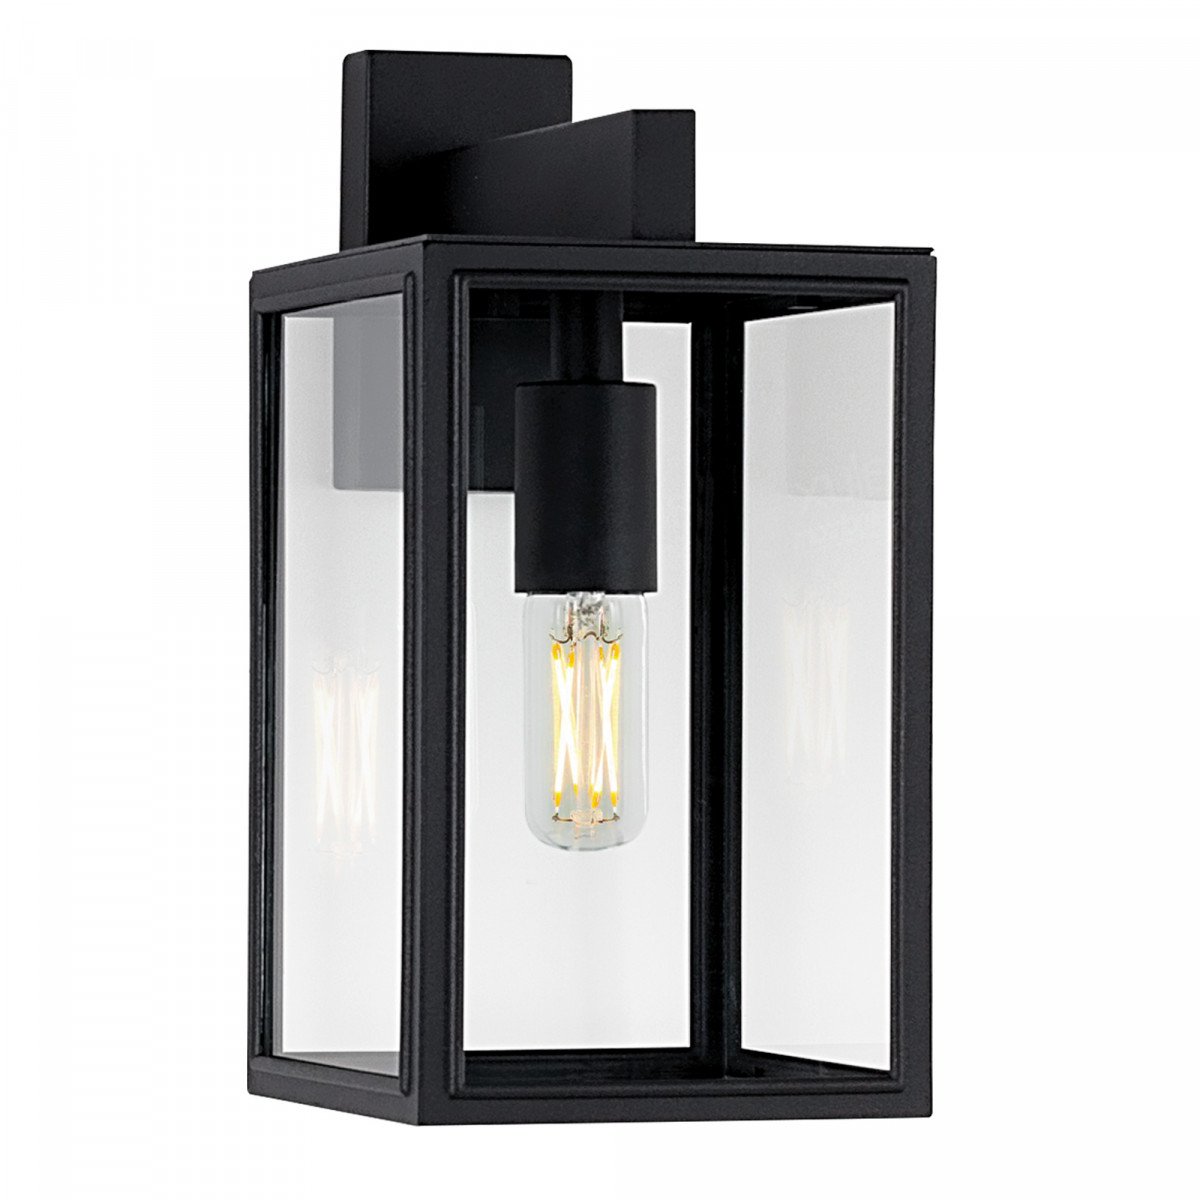 Lampe d'extérieur noire moderne avec verre clair pour éclairage mural extérieur